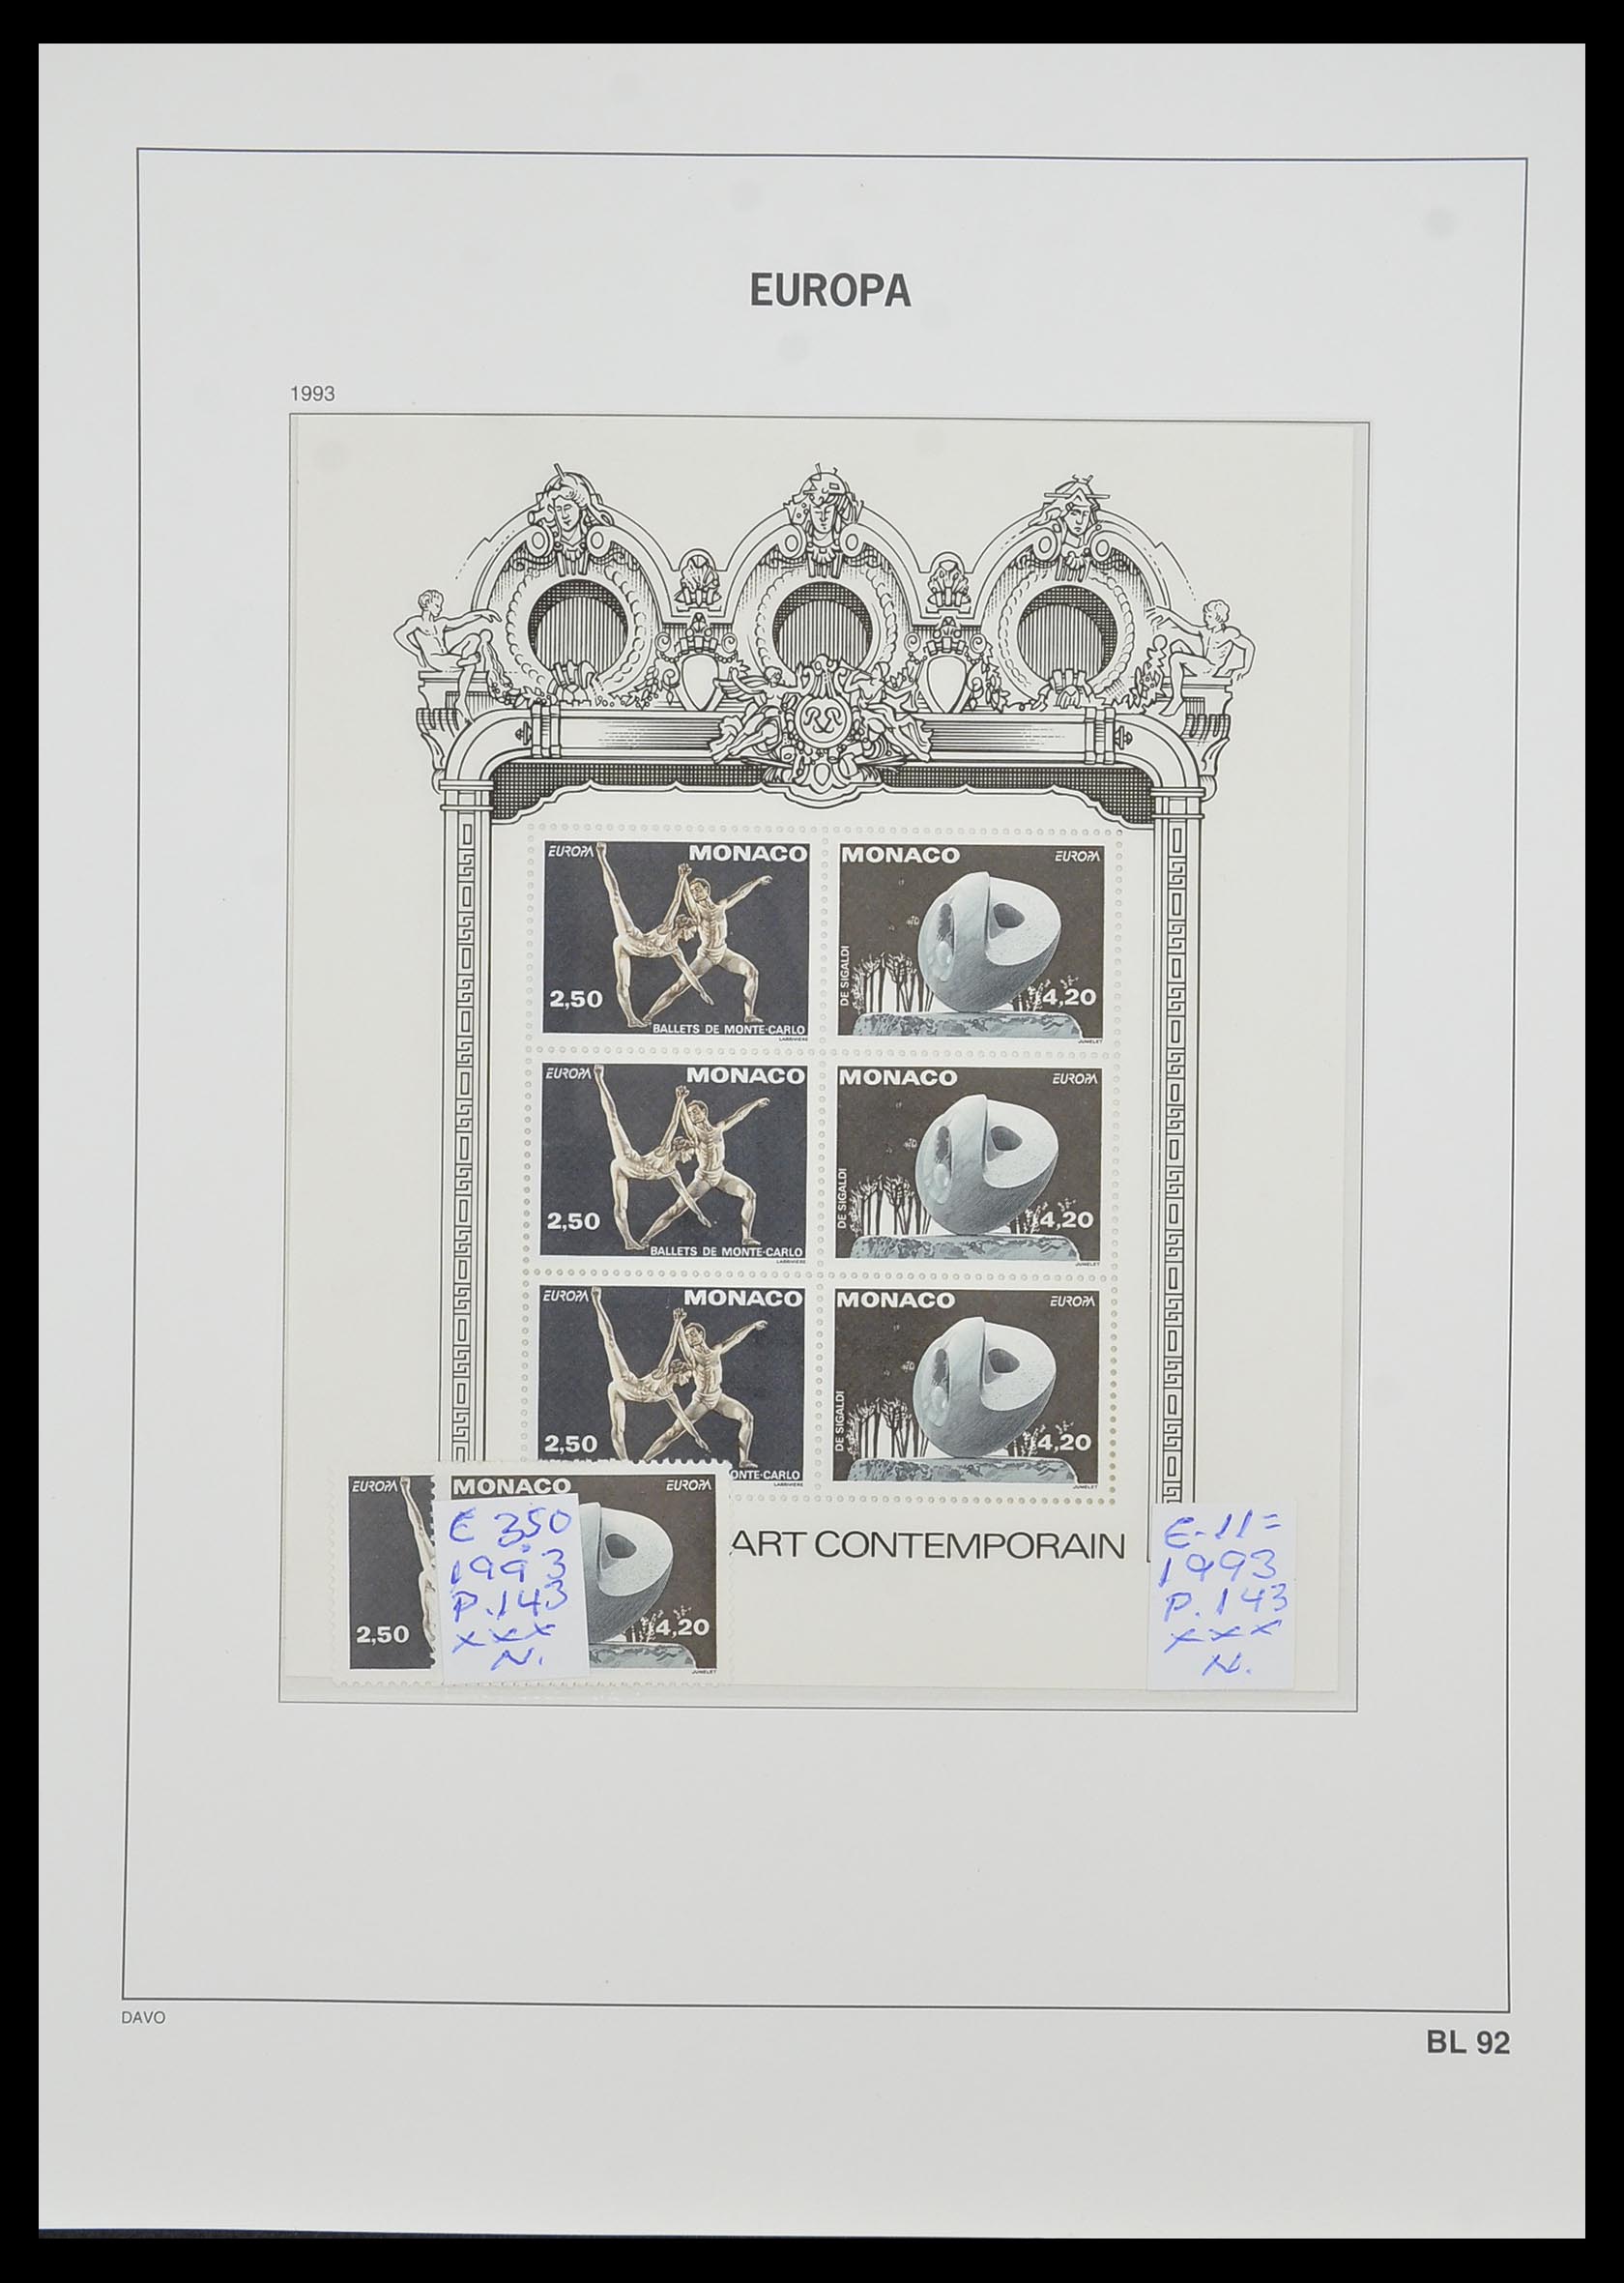 33985 080 - Stamp collection 33985 Europa CEPT souvenir sheets 1974-2014.